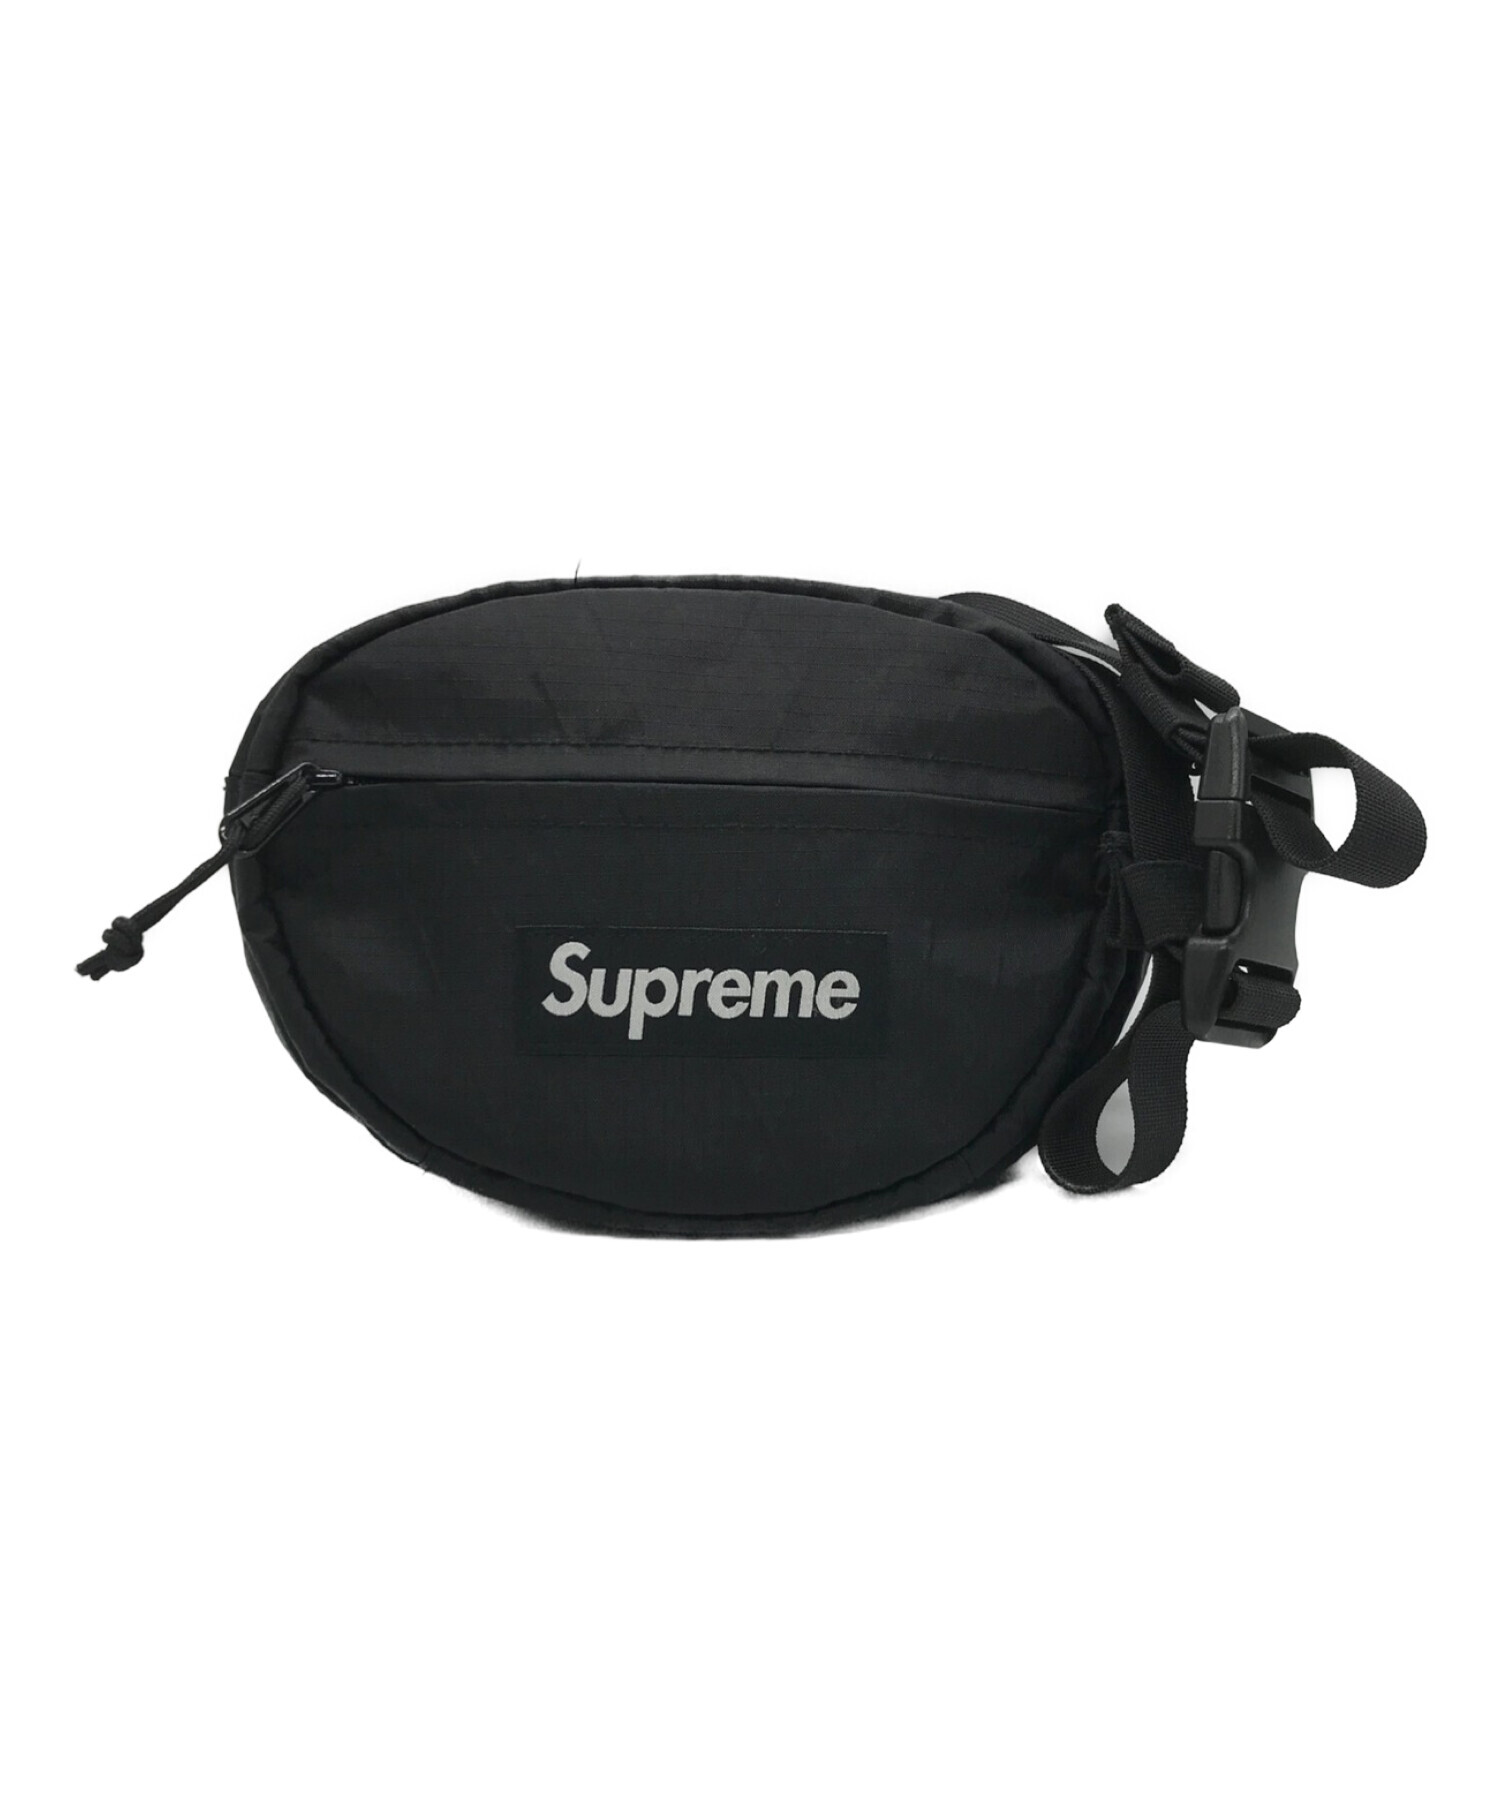 Supreme 18AW Waist Bag Black